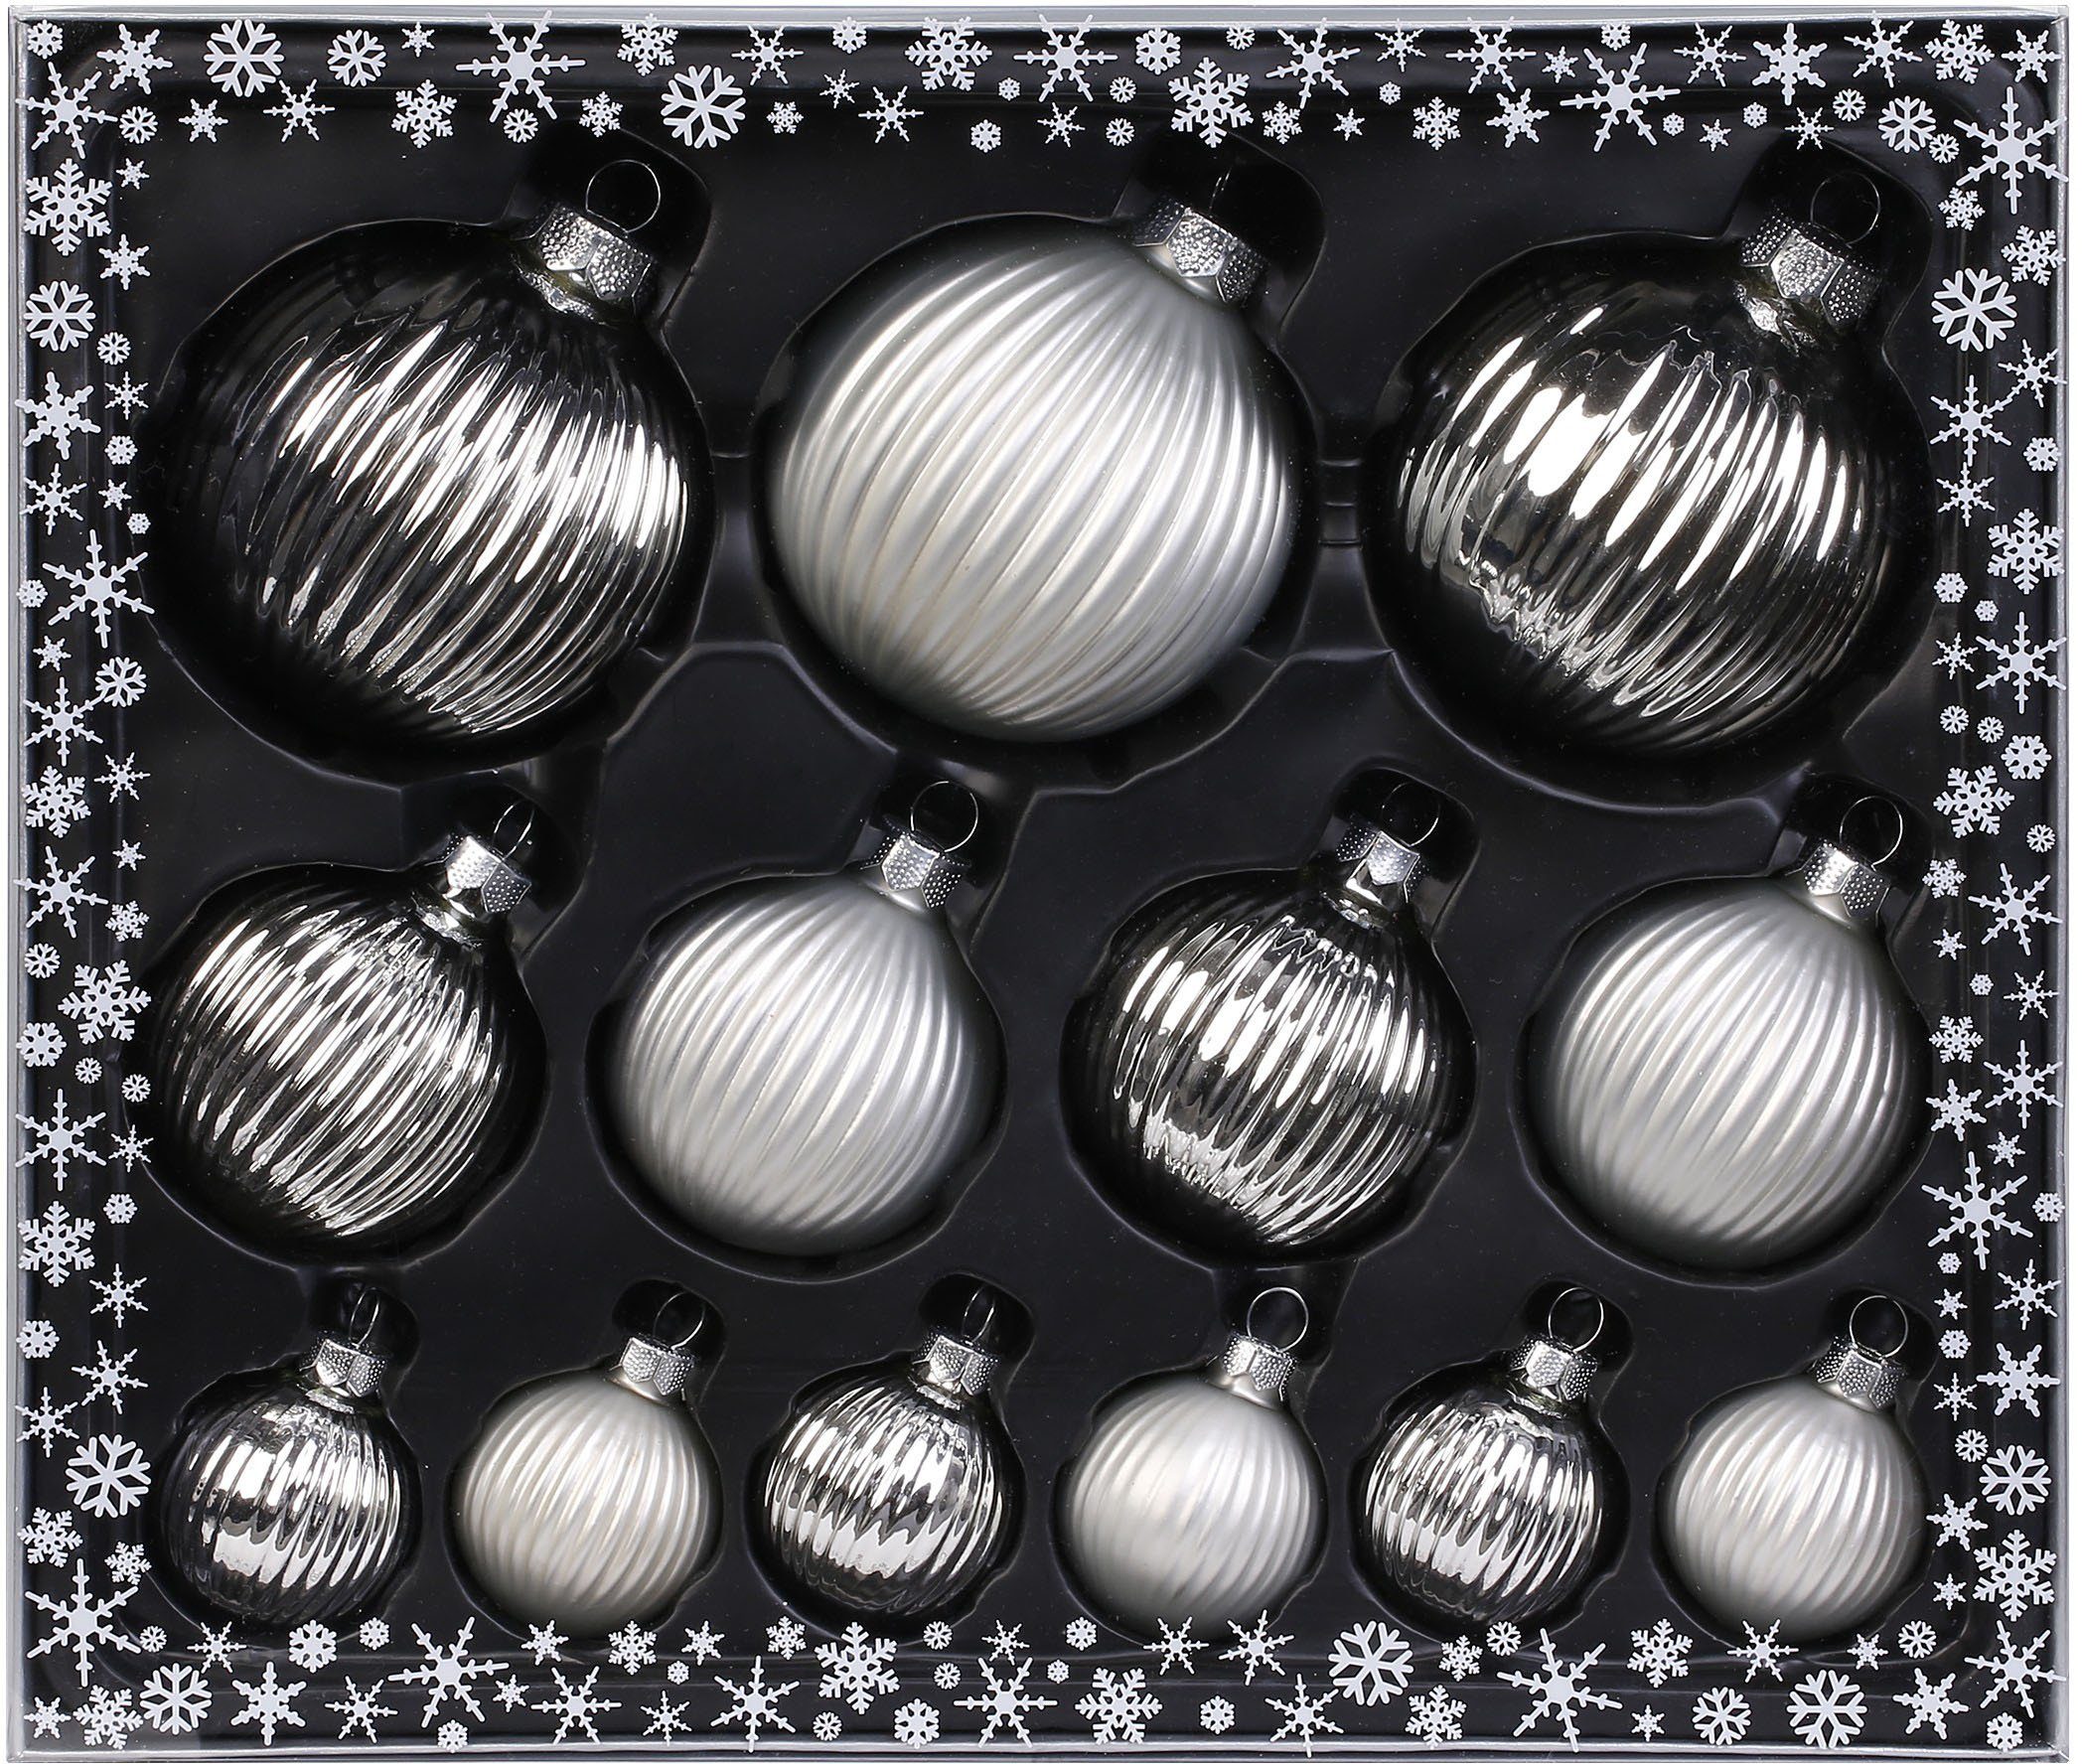 MAGIC by Inge Weihnachtsbaumkugel Frosty Silver, Weihnachtsdeko, Christbaumschmuck (13 St), hochwertige Christbaumkugeln aus Glas, Strukturkugeln, Ø 4/6/8 cm | Weihnachtskugeln